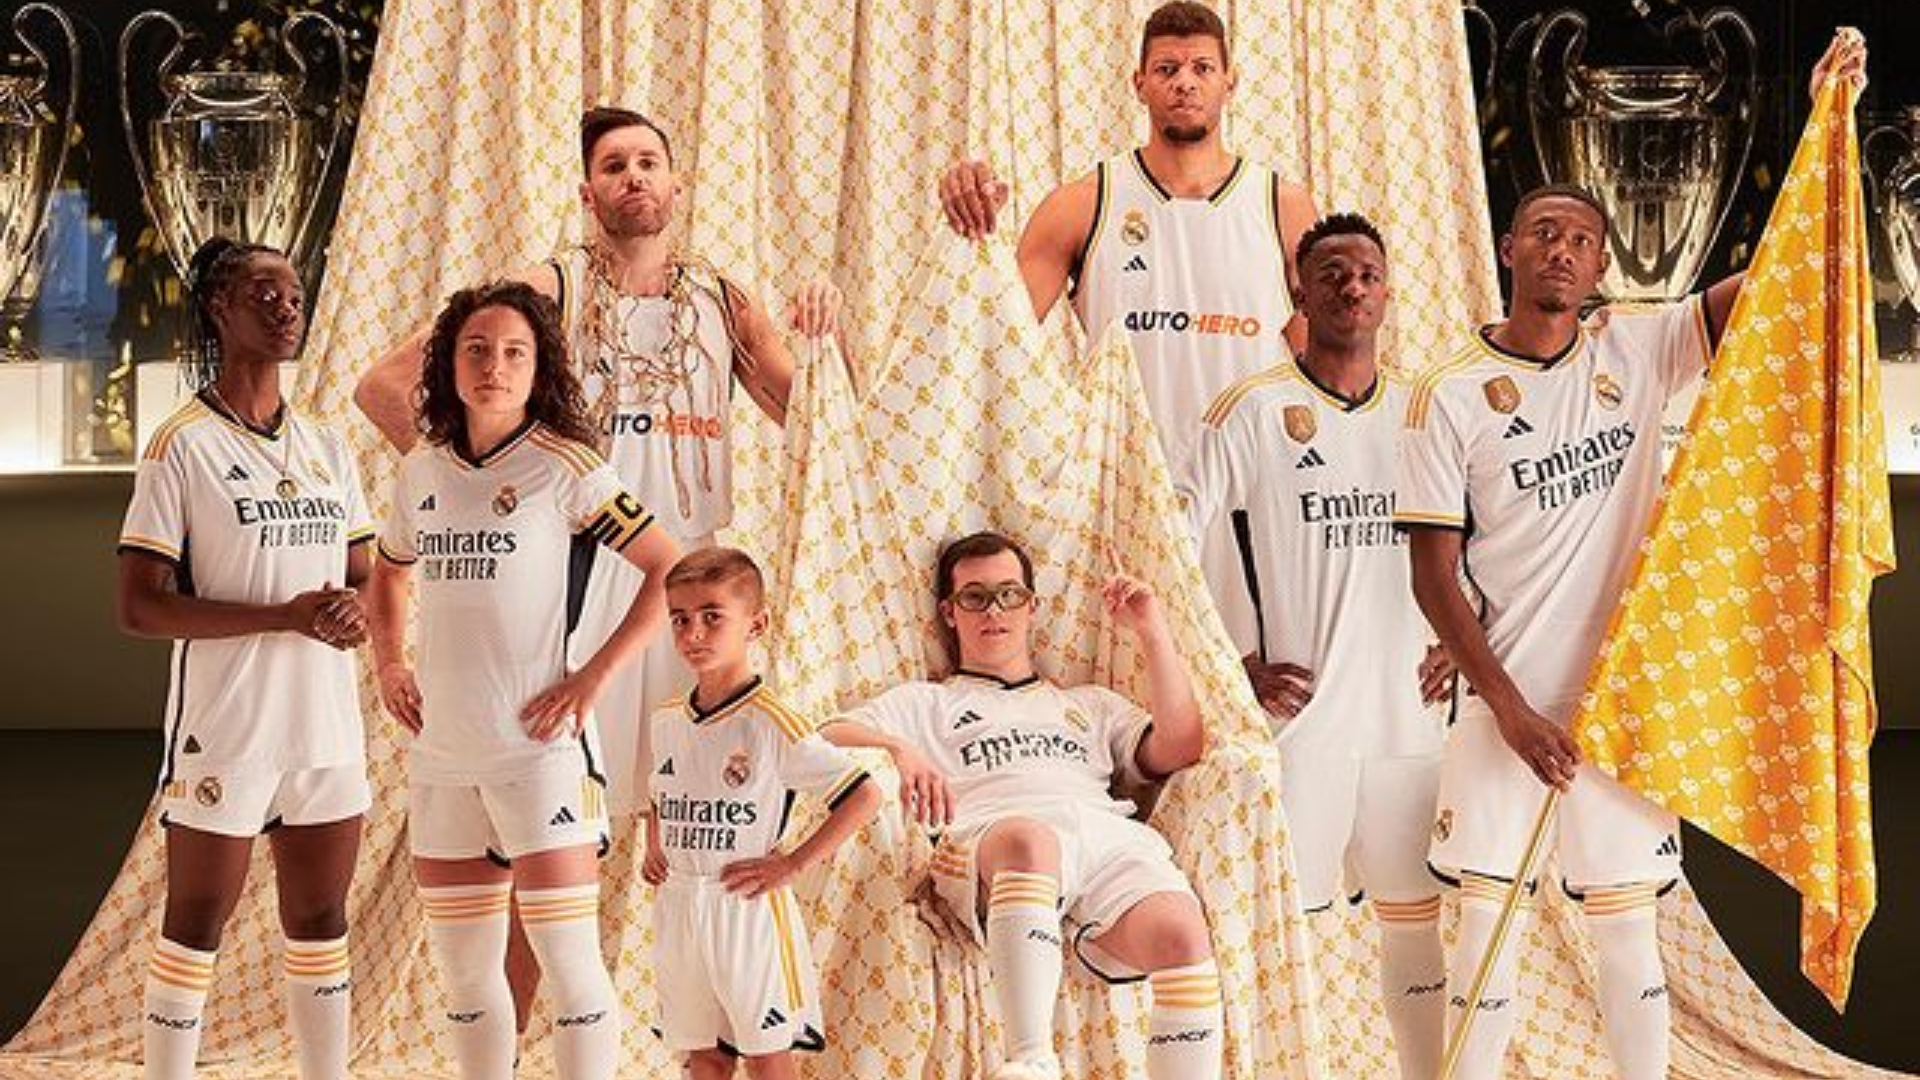 Real madrid camiseta real madrid Real Madrid camiseta real madrid